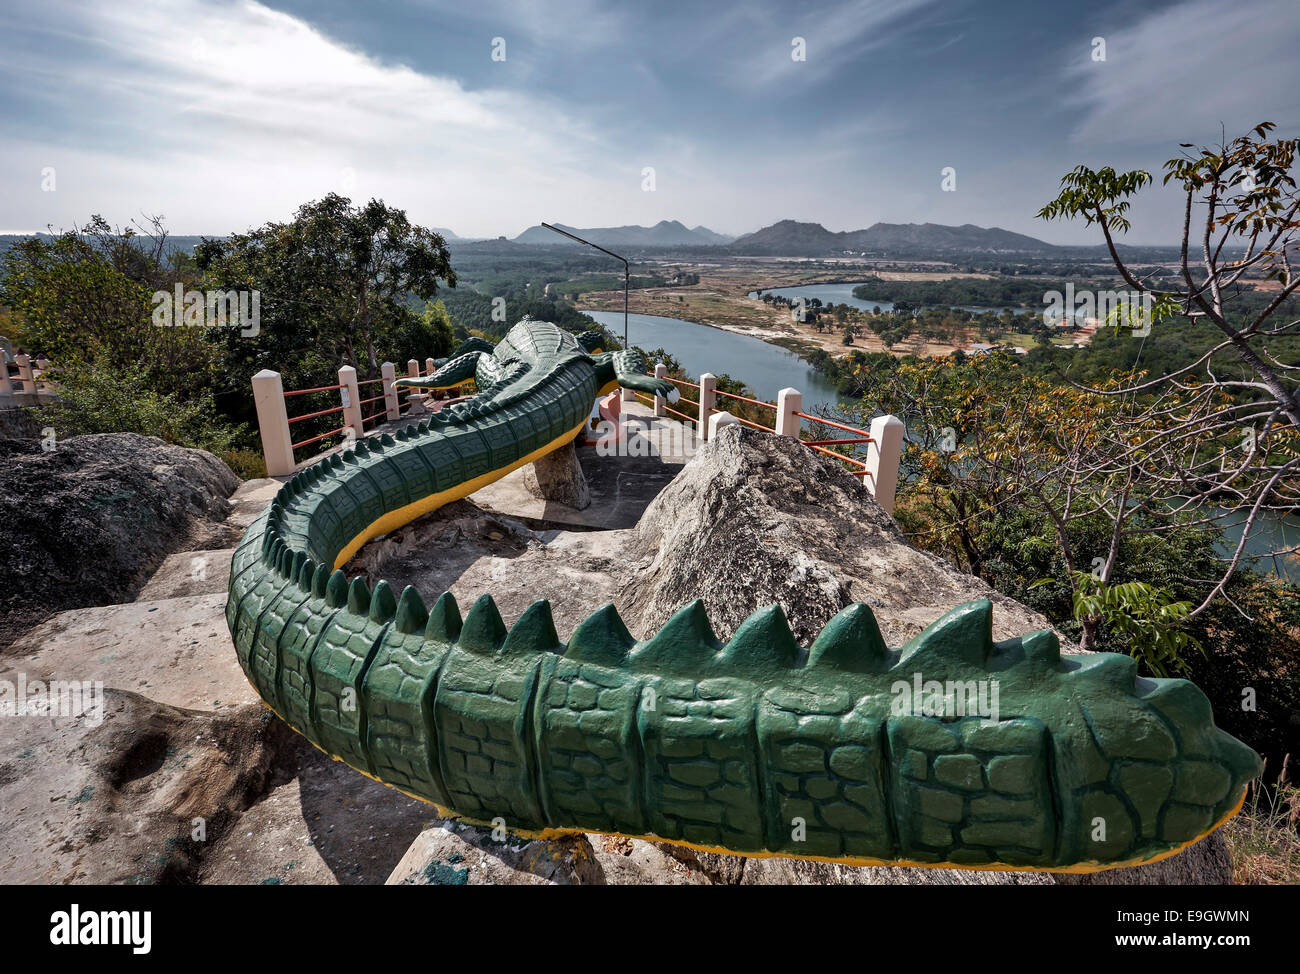 Enorme e insolito in pietra scolpita la figura del coccodrillo in cima a una scogliera tempio buddista a Pranburi, Thailandia SUDEST ASIATICO Foto Stock